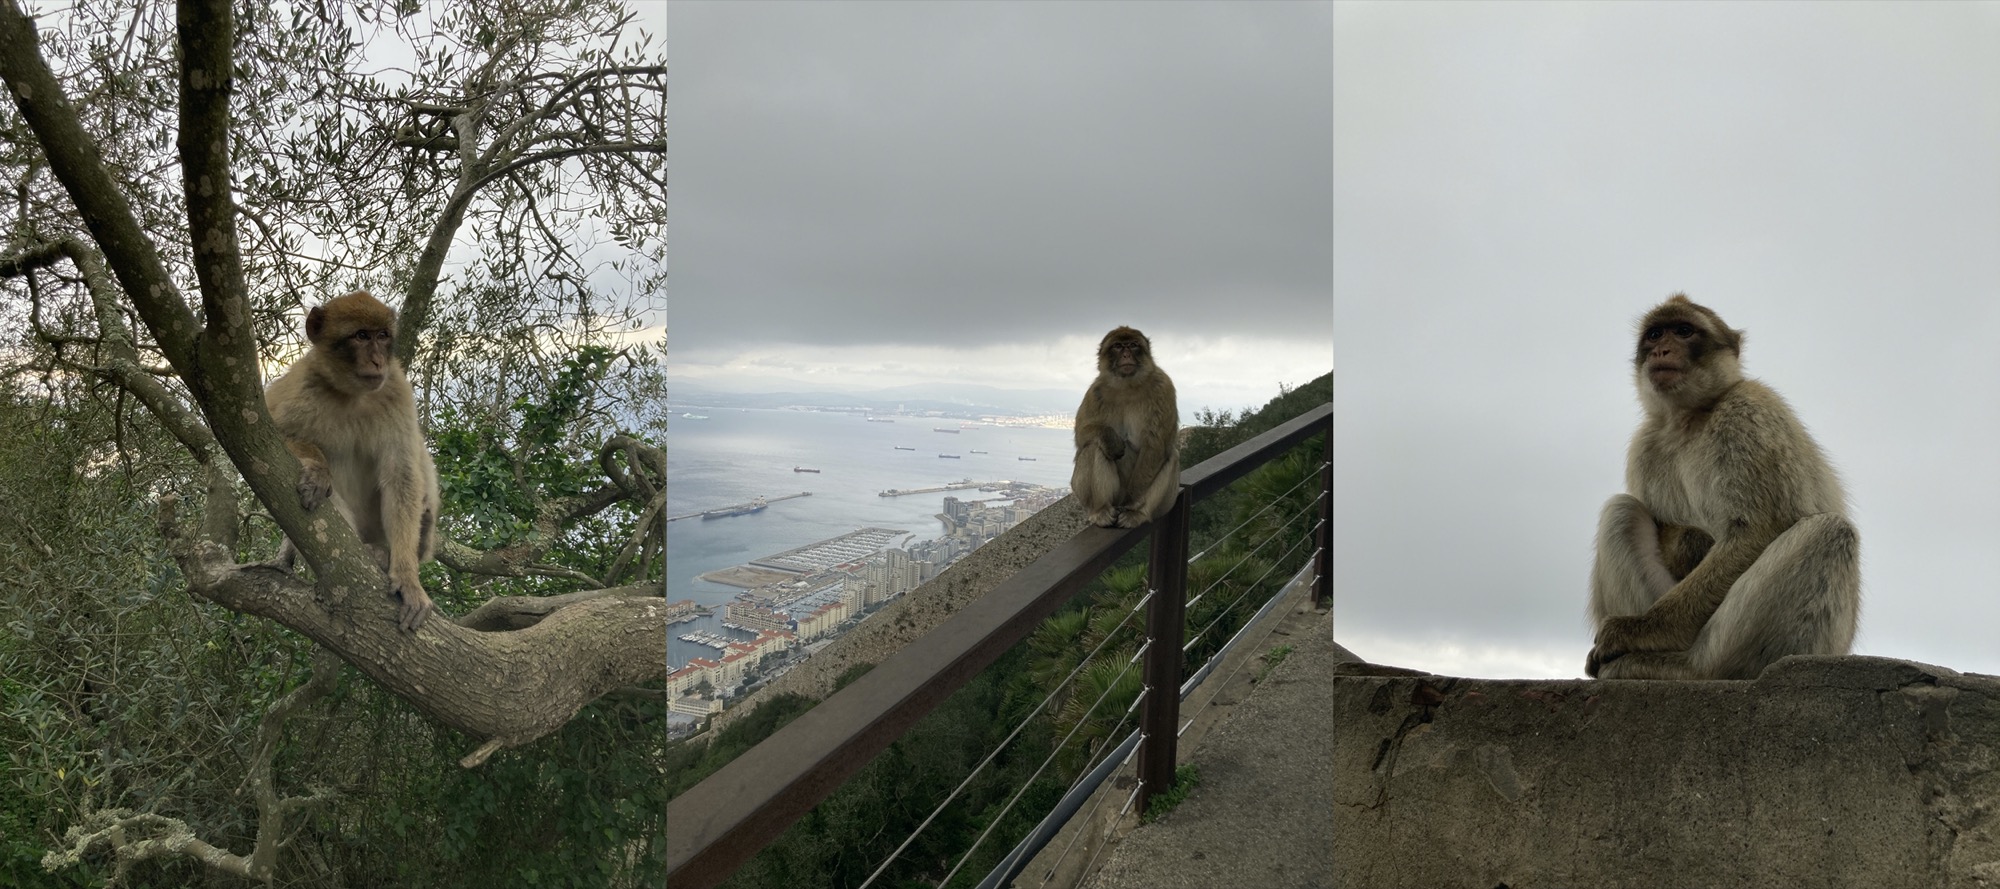 nebeneinander drei Fotos, links sitzt ein Affe auf einem Ast und schaut entspannt weg von der Kamera, in der Mitte sitzt ein Affe auf einem Geländer, dahinter sind der Hafen und die Bucht von Gibraltar zu sehen, rechts sitzt ein Affe auf einer Mauer und schaut scheinbar nachdenklich in die Ferne